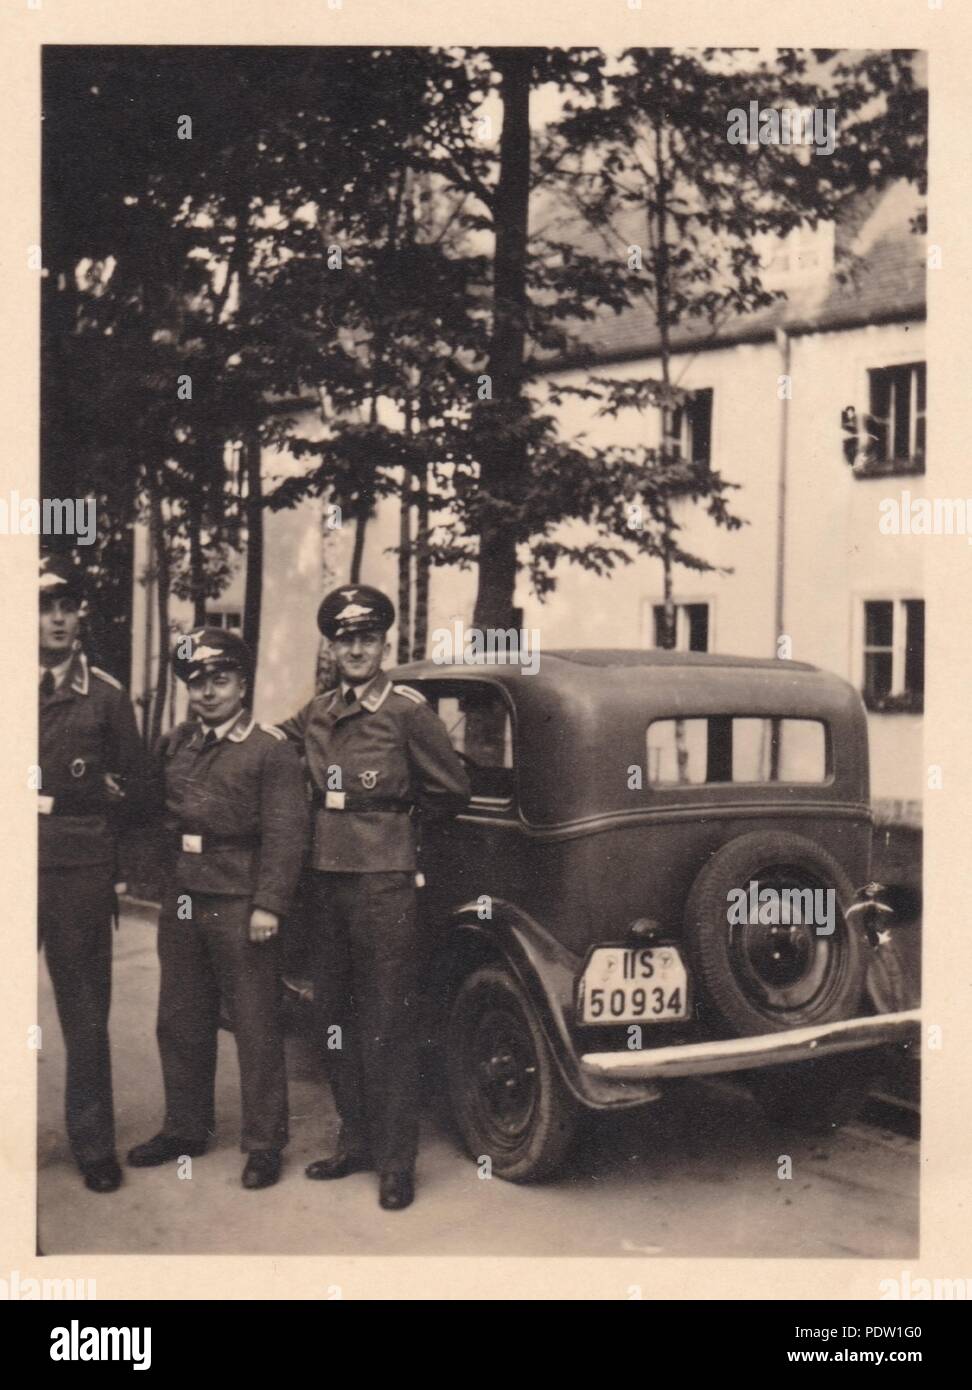 Bild aus dem Fotoalbum von Oberfeldwebel Karl gendner von 1. Staffel, Kampfgeschwader 40: Karl Gendner (Mitte) steht mit seinem Auto mit zwei Kollegen, außerhalb der Kaserne in Giebelstadt 1938 Stockfoto